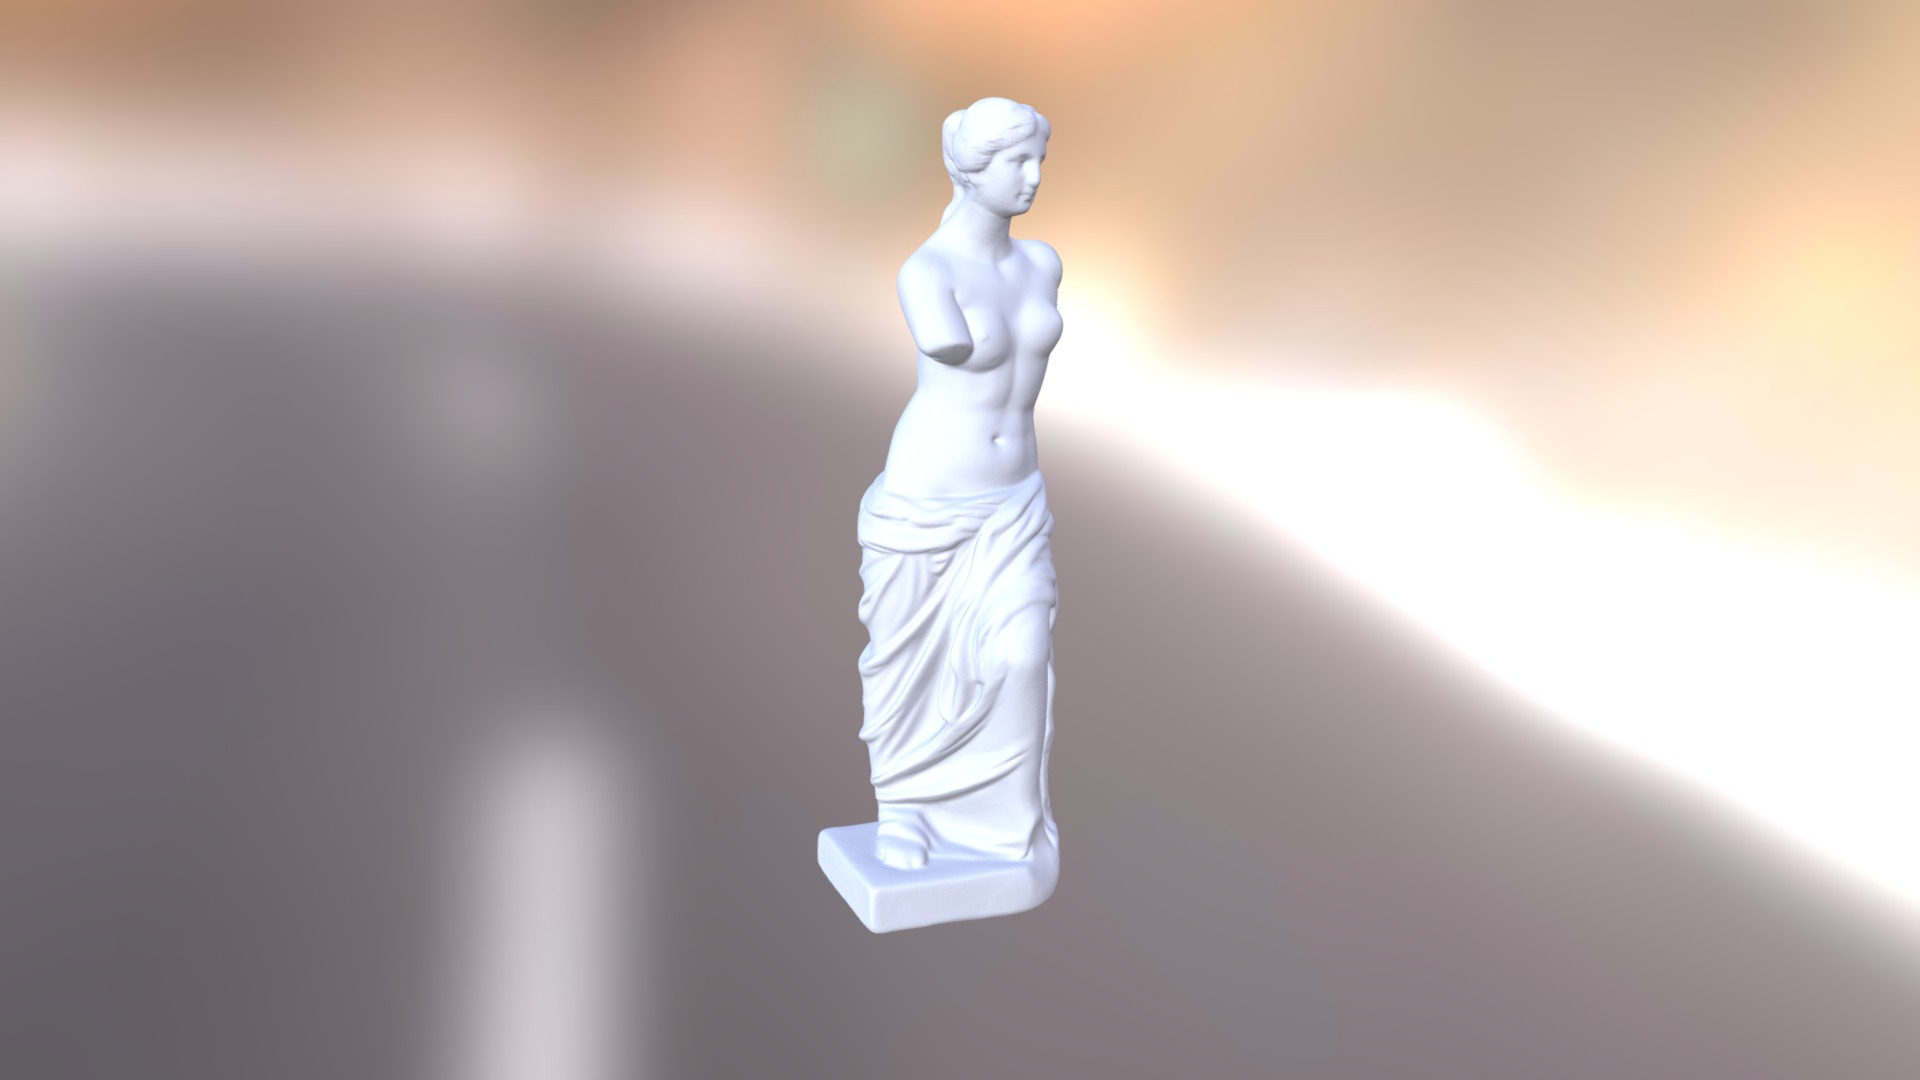 3D model Venus de Milo - This is a 3D model of the Venus de Milo. The 3D model is about a white statue of a person.